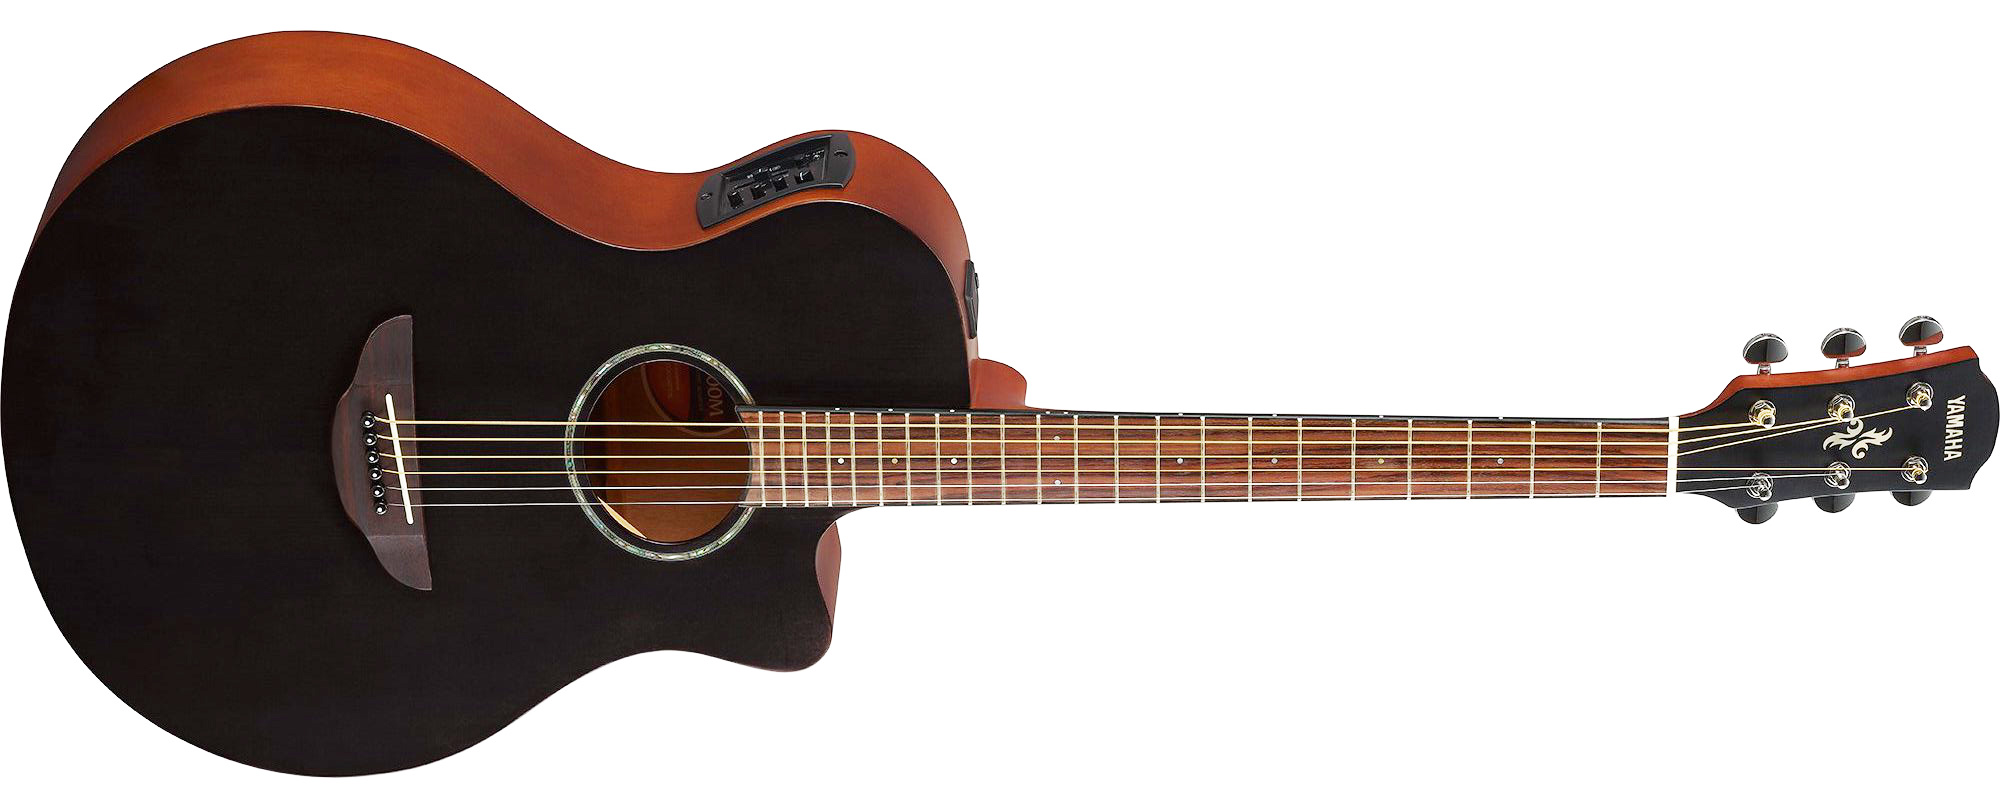 Yamaha APX 600M Smokey Black es una guitarra electroacústica con un cómodo cuerpo delgado, acceso fácil a los trastes superiores, excelente facilidad de ejecución y tono acústico natural.